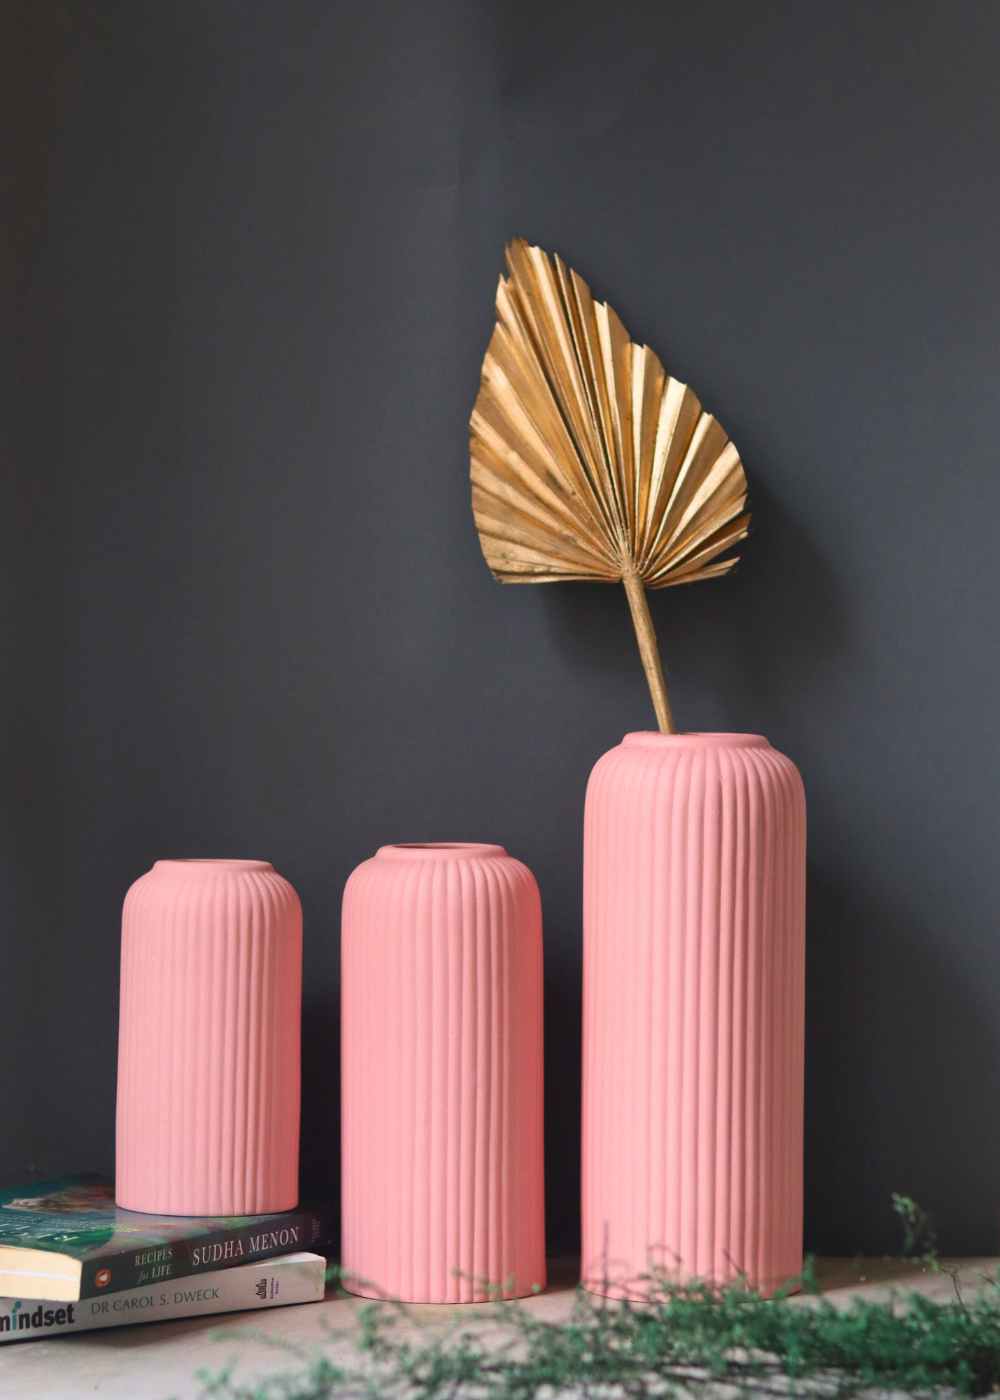 Handmade ceramic vases for home decoration